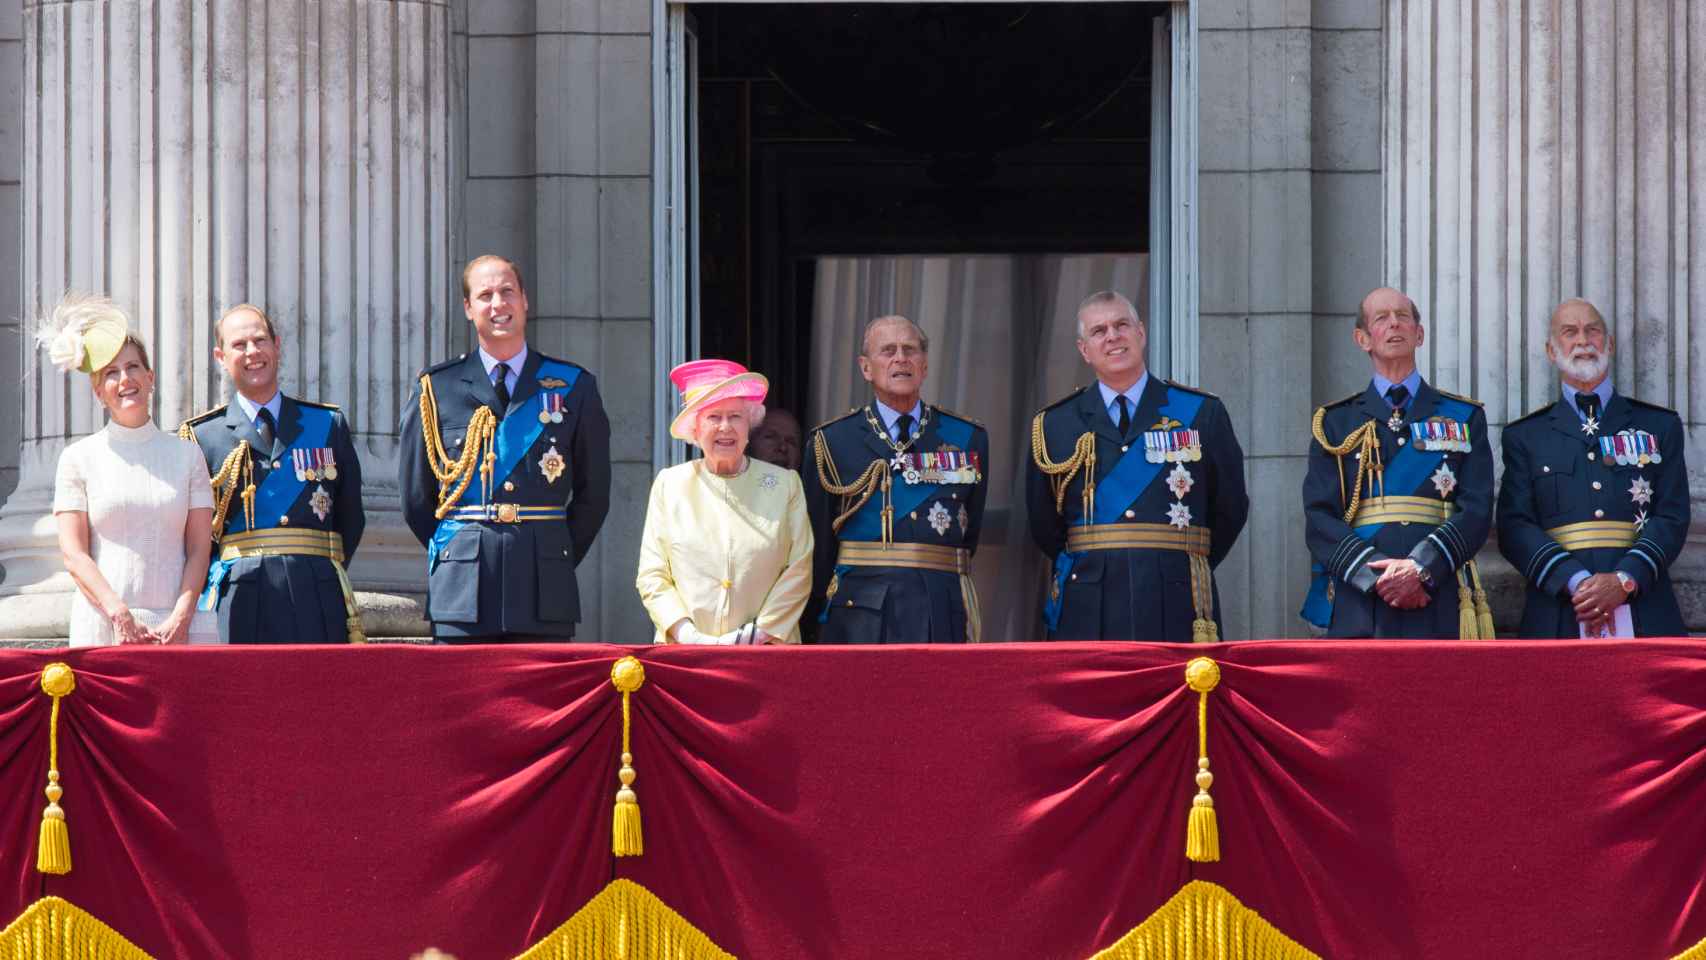 Michael de Kent (el primero de derecha a izquierda) ha estado presente en importantes actos de la Corona británica.